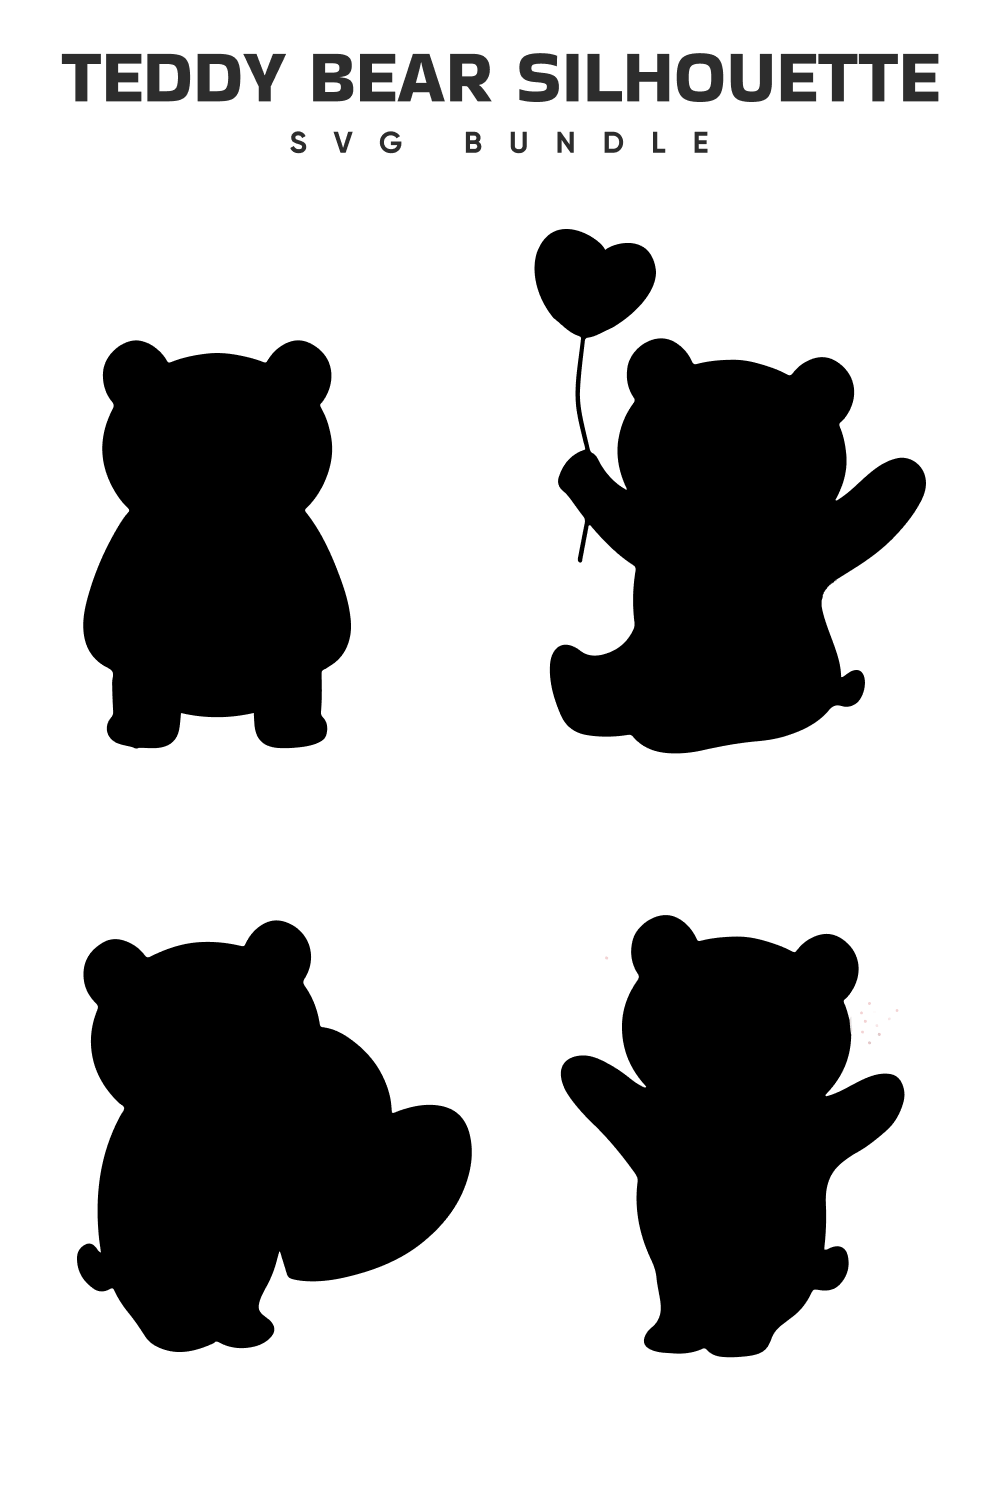 Teddy bear silhouettes with a heart balloon.